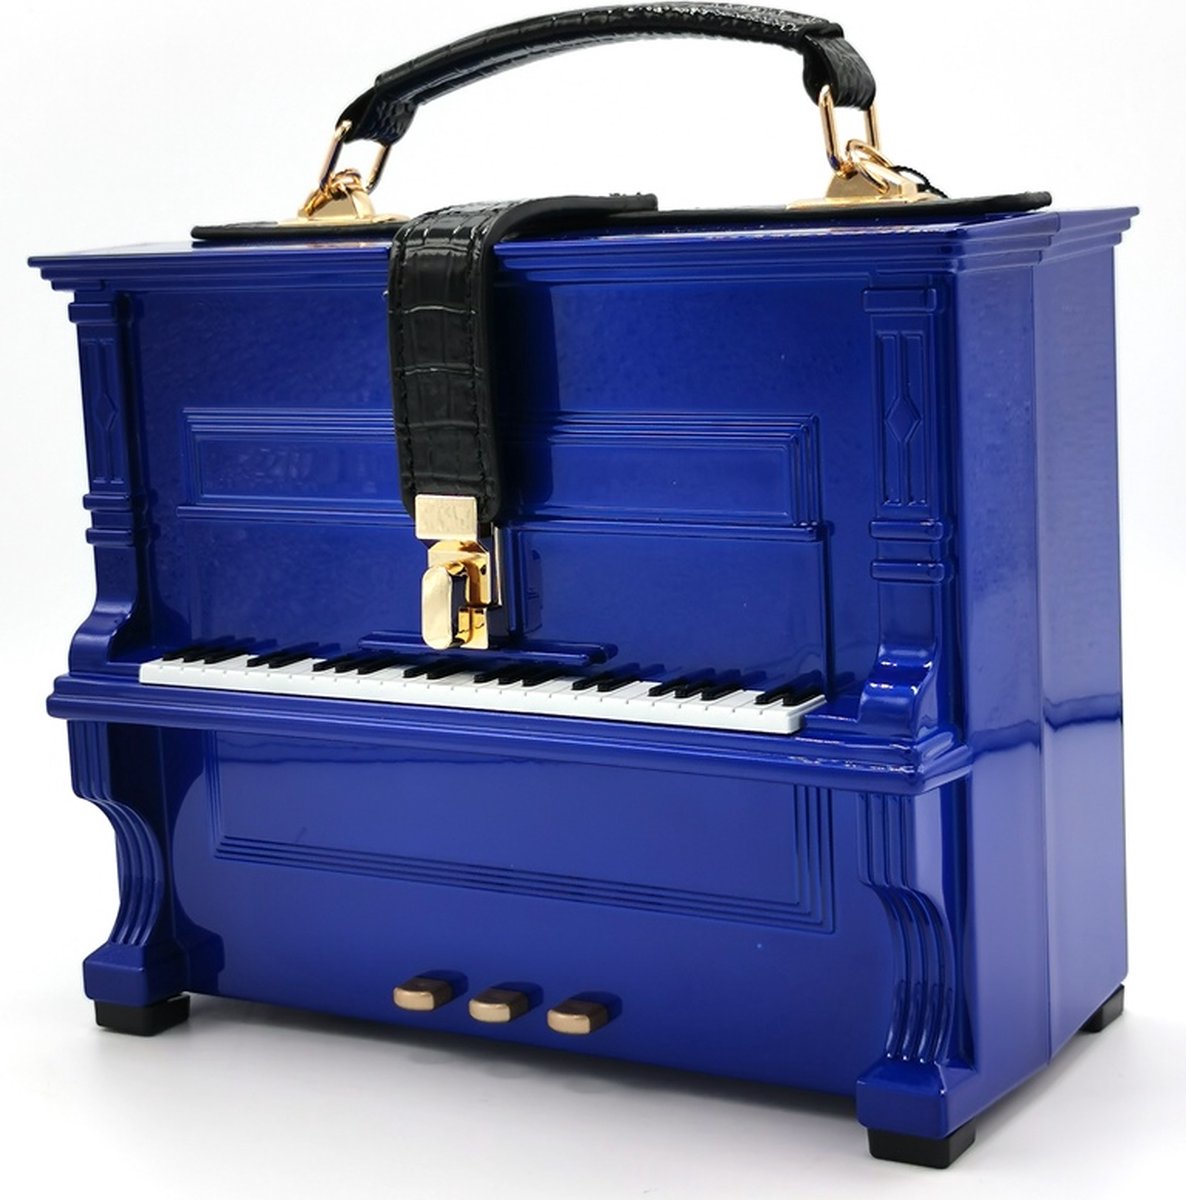 Piano Handtas in de vorm van Echte Piano blauw - Origineel en Mooi - (bxhxd) ca. 23cm x 18cm x 10cm